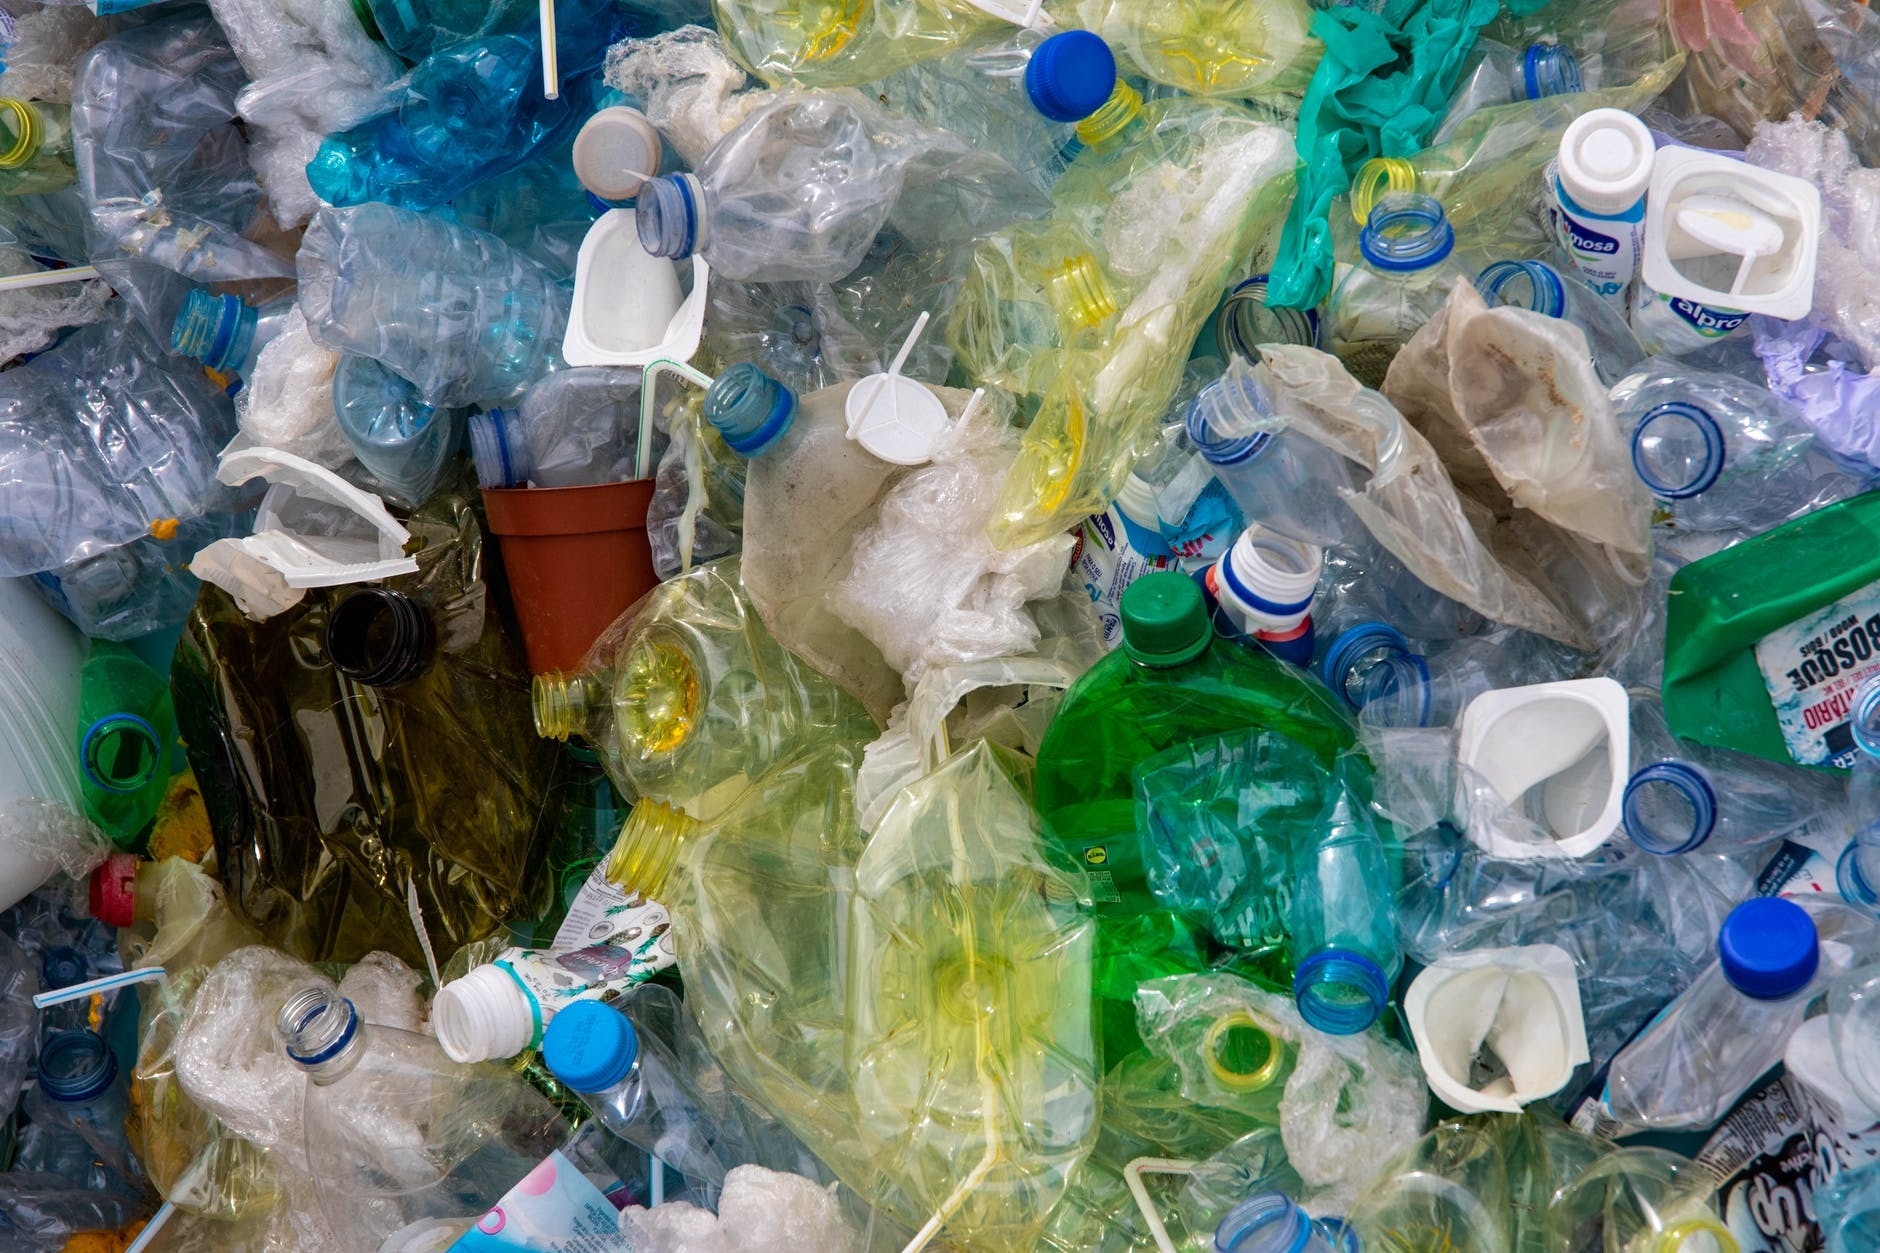 Sampah Menjadi Masalah Lingkungan Di Indonesia Halaman All Kompasiana Com